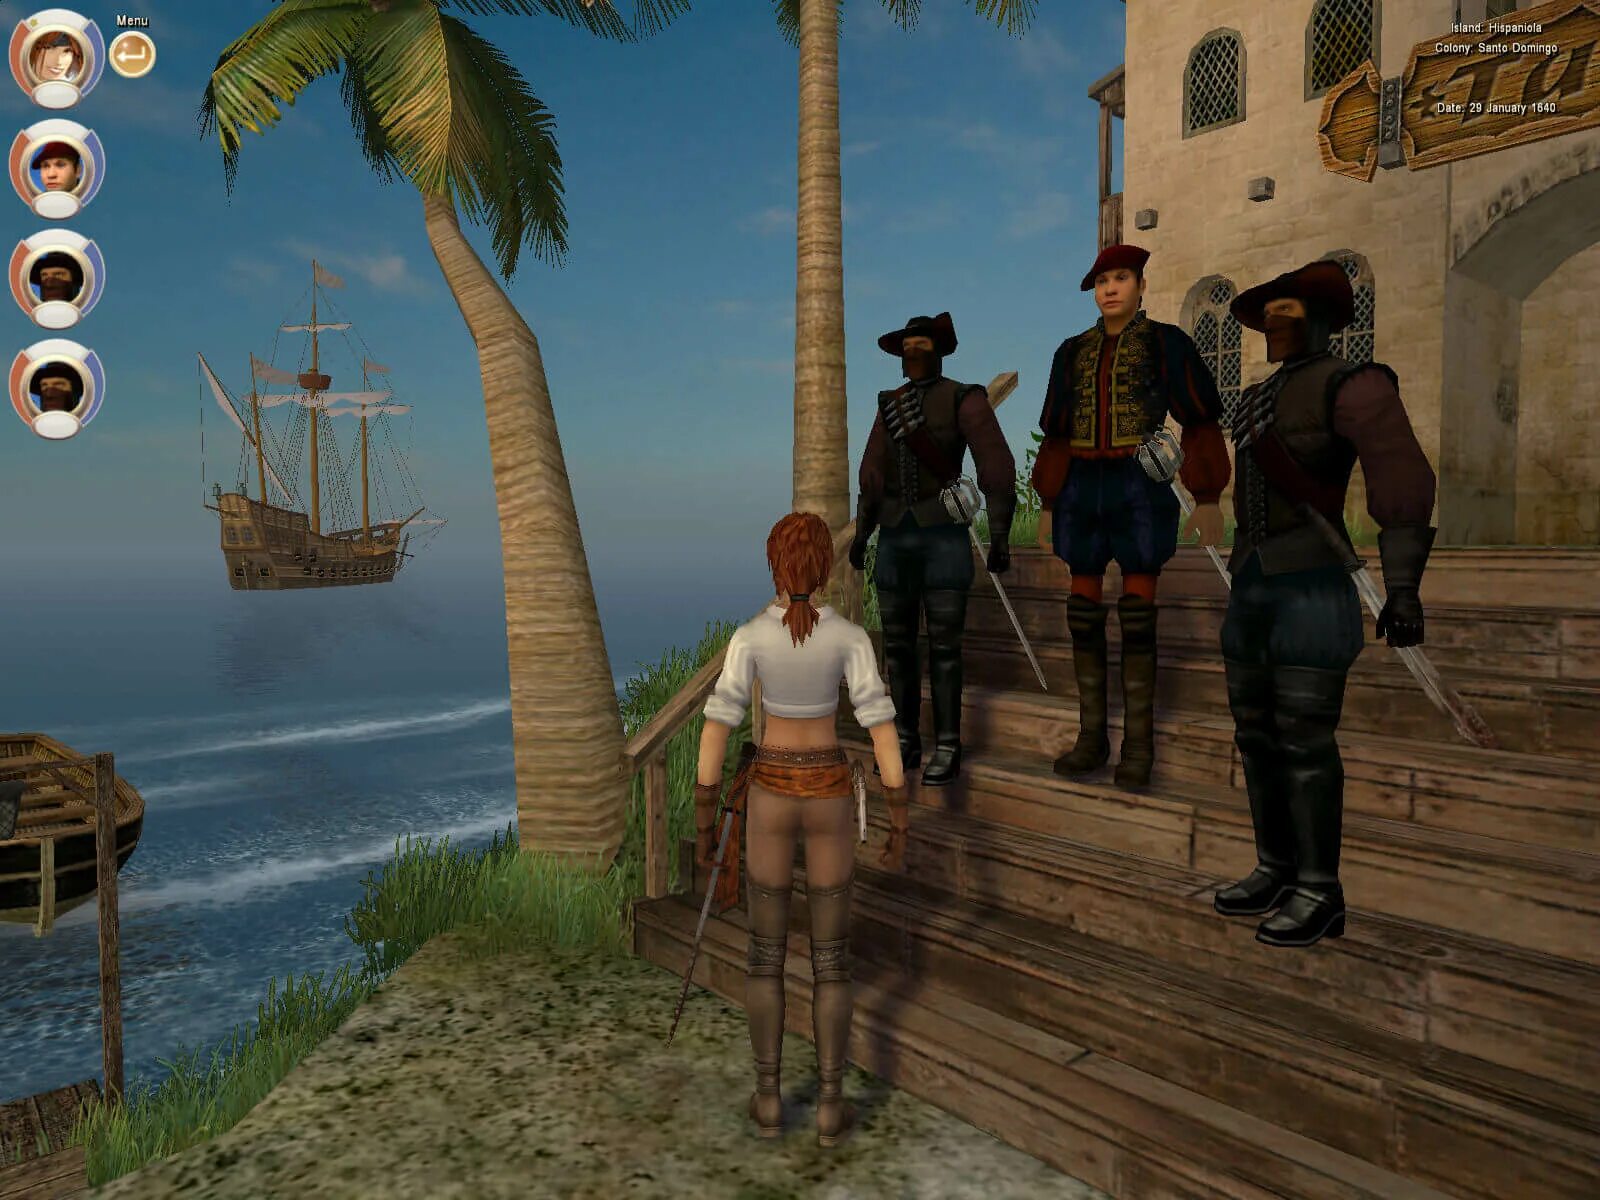 Игры про пиратов с открытым миром. Корсары 3 пираты Карибского моря. Корсары III (2005). Age of Pirates: Caribbean Tales игра. Корсары пираты Карибского моря игра.